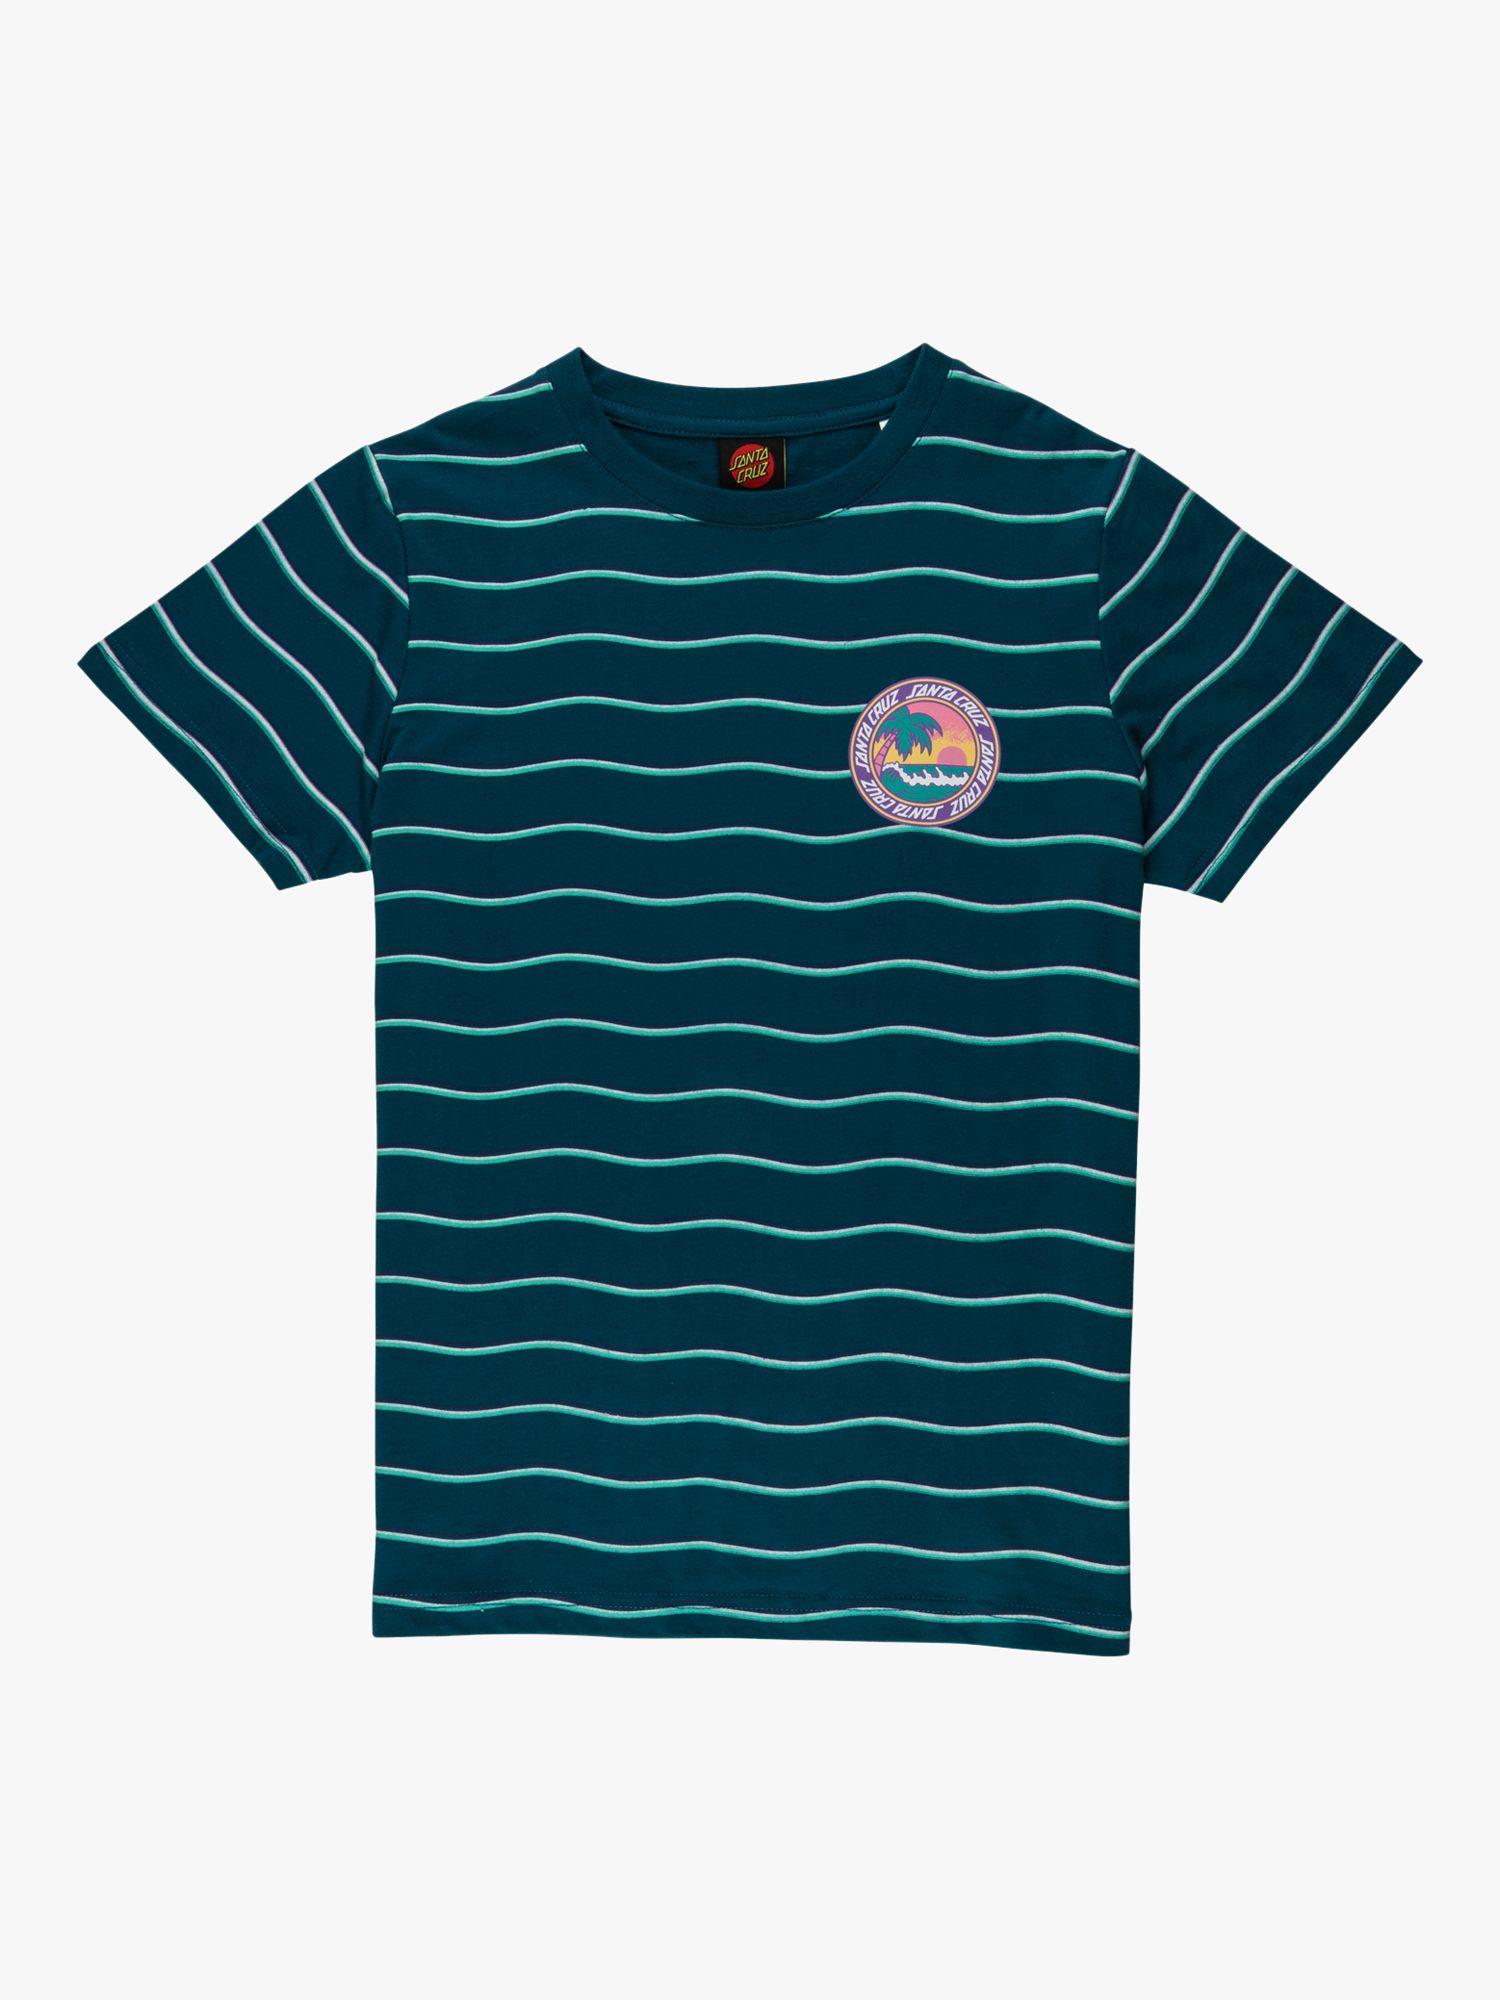 Santa Cruz Kids' Paradise Short Sleeve Stripe T-Shirt, Teal, 6-8 years